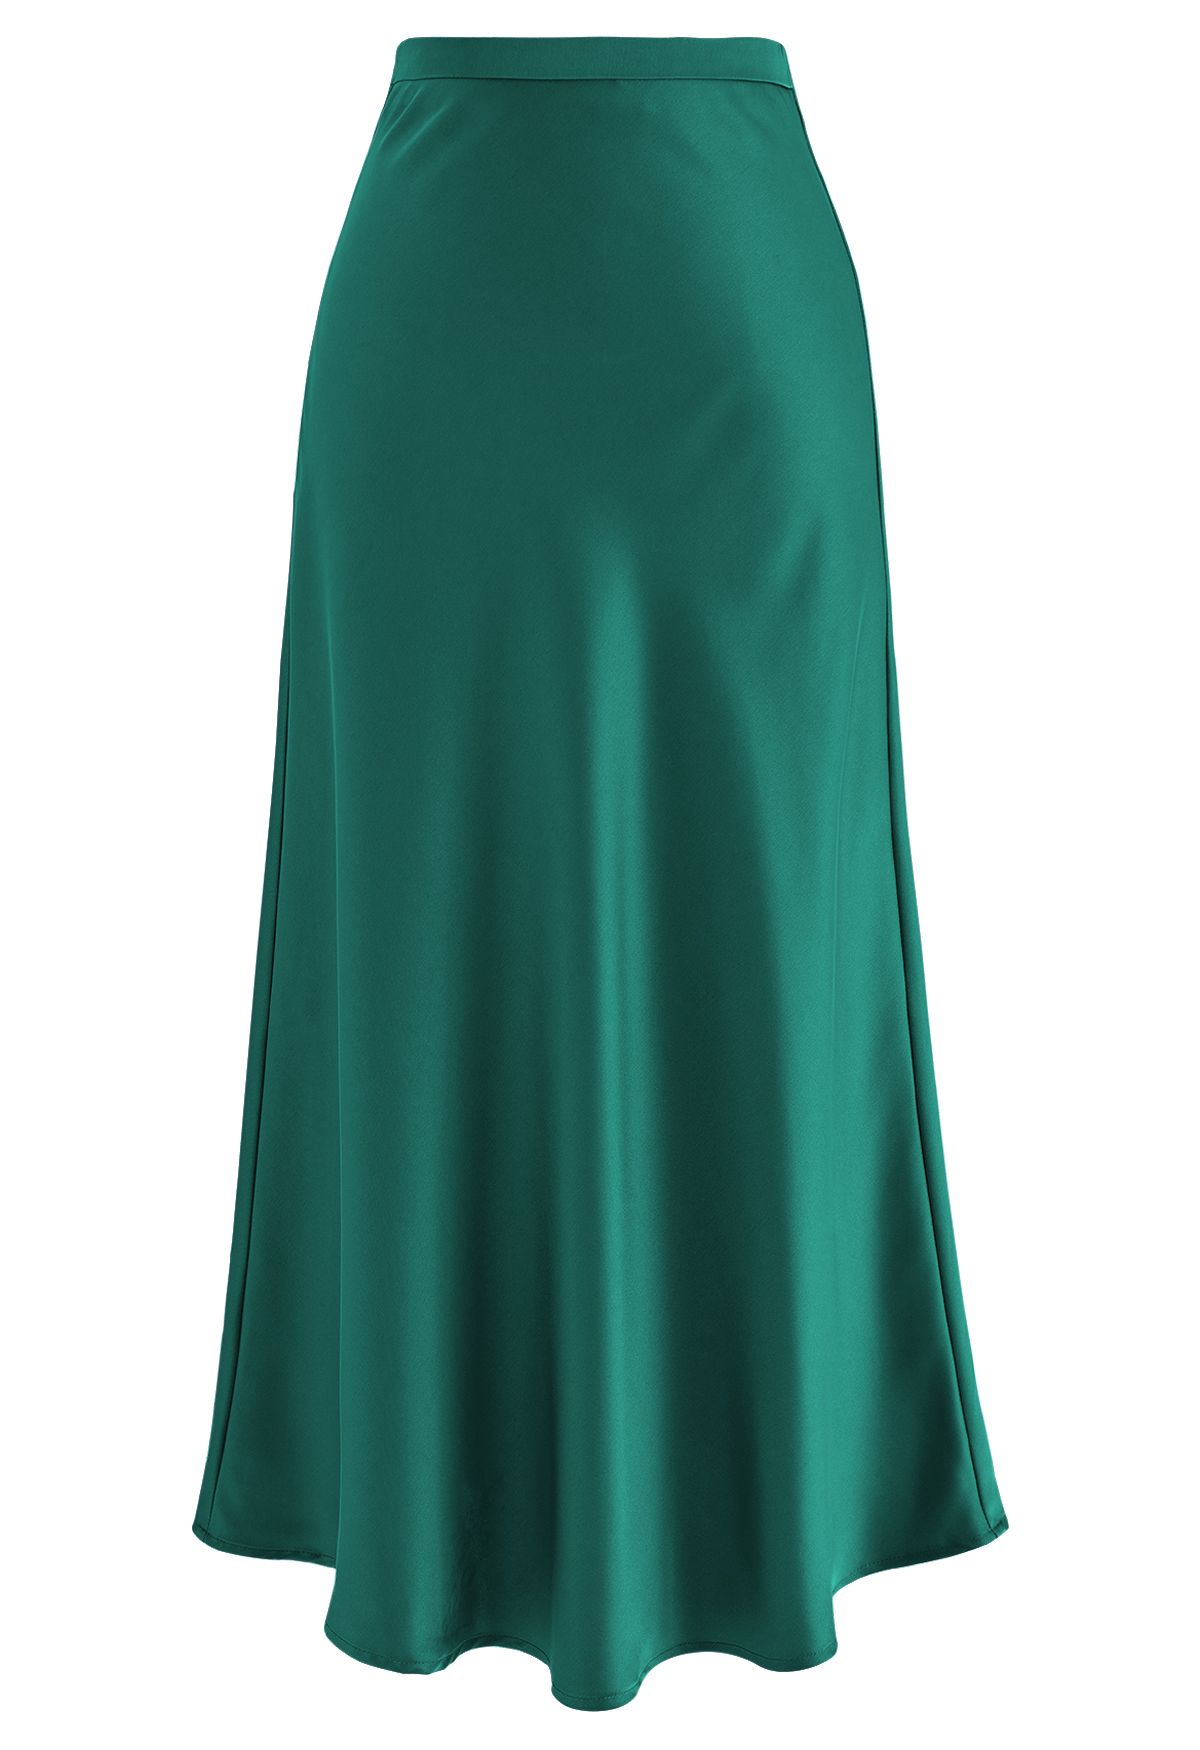 Satin Finish Bias Cut Midi Skirt in Emerald - Retro, Indie and Unique ...